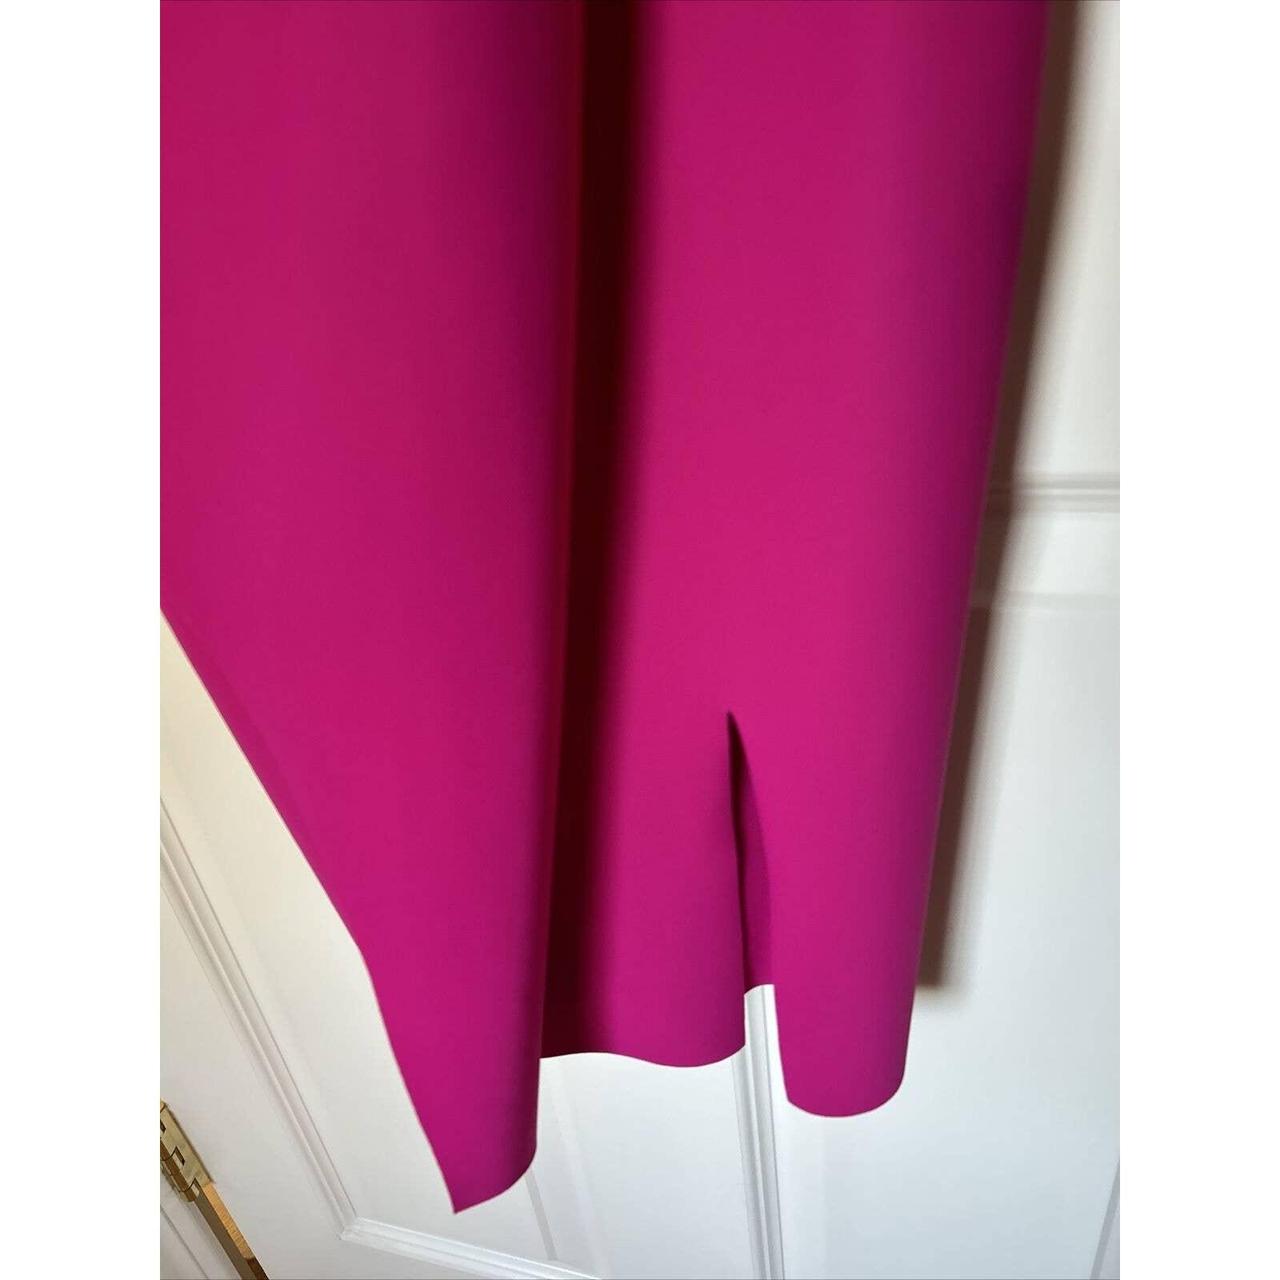 Chiara Boni La Petite Robe Women's Pink Dress (7)